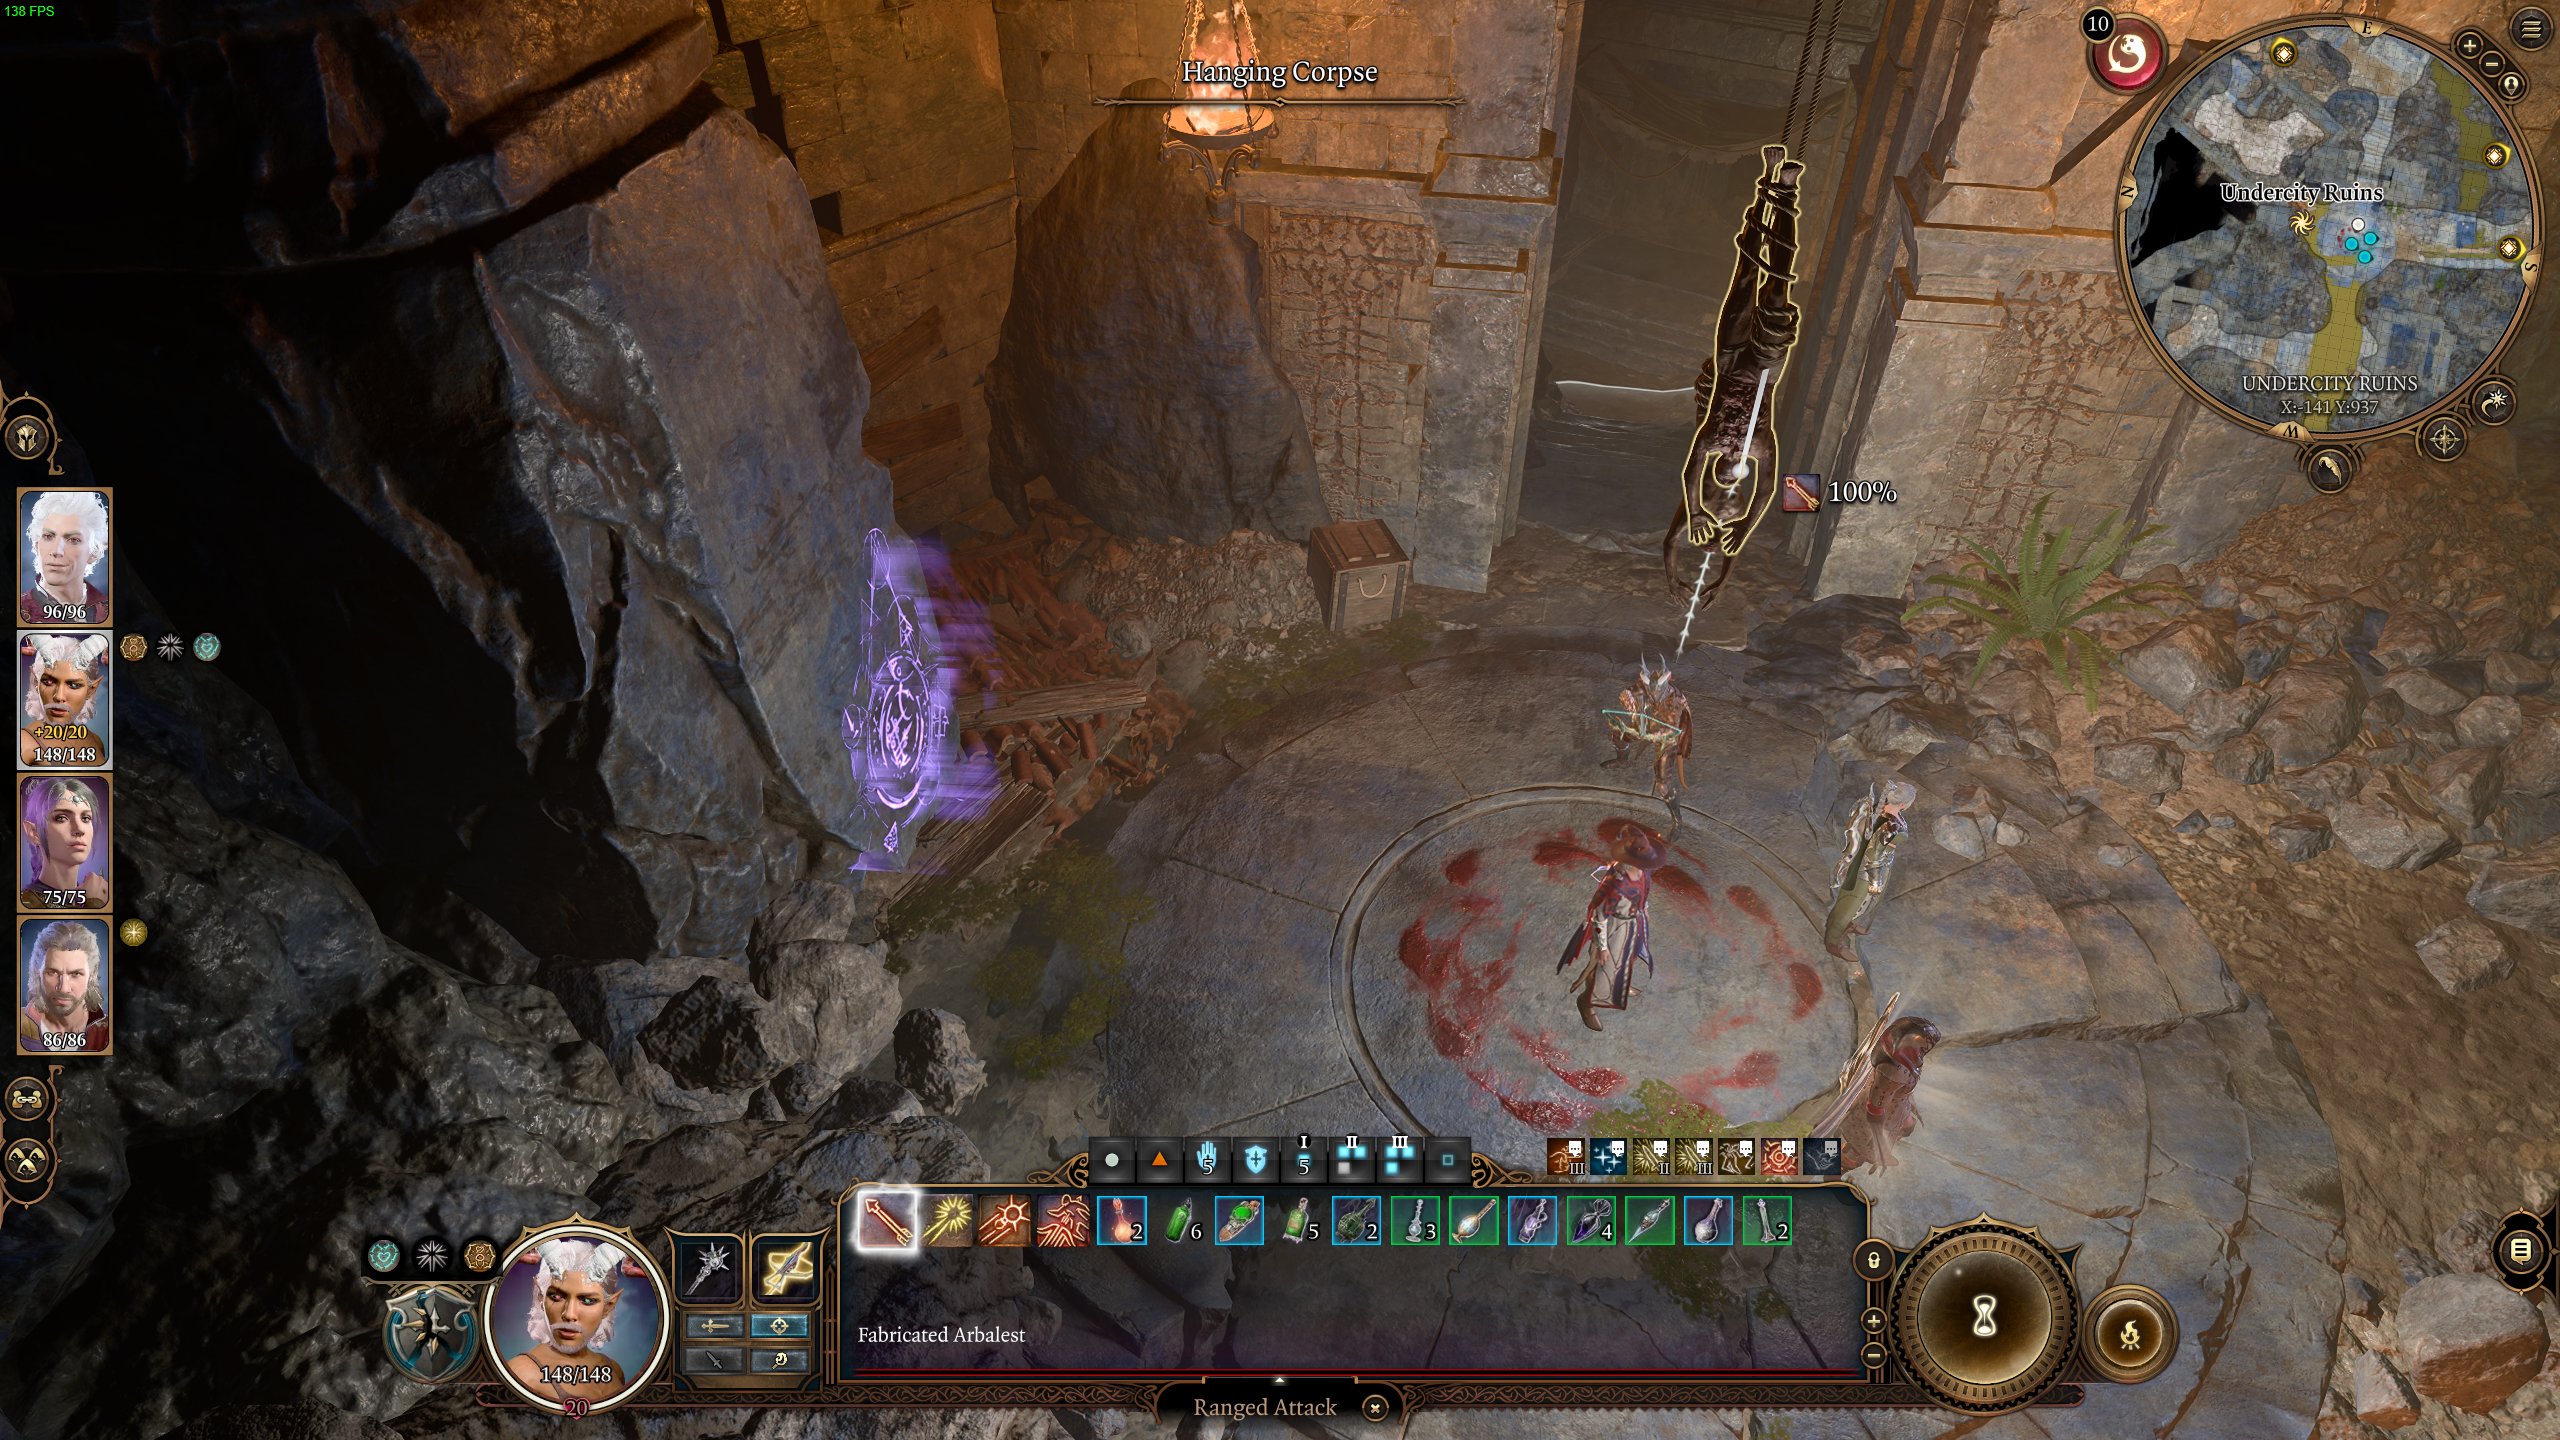 Baldur's Gate 3: How to open Bhaal's Door in the Undercity Ruins in BG3